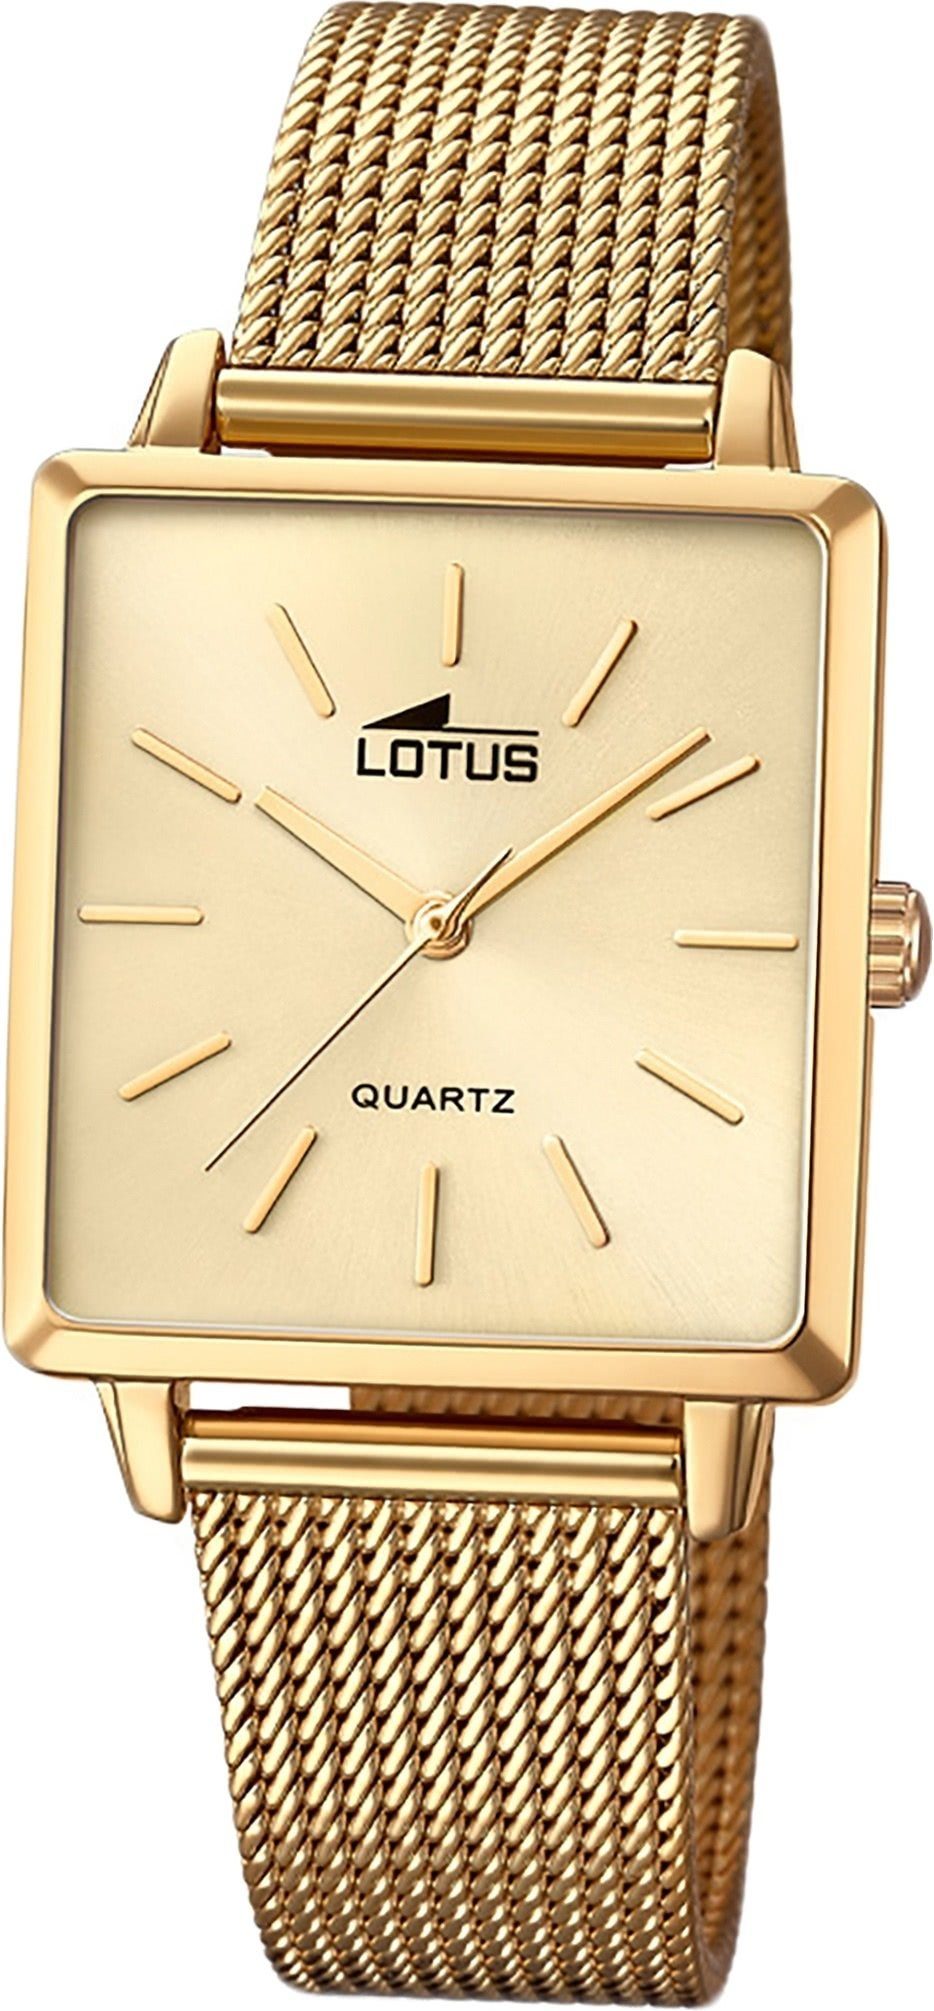 Lotus Quarzuhr LOTUS Edelstahl Damen Uhr 18719/2, Damenuhr mit Edelstahlarmband, eckiges Gehäuse, klein (ca. 27mm), Fash